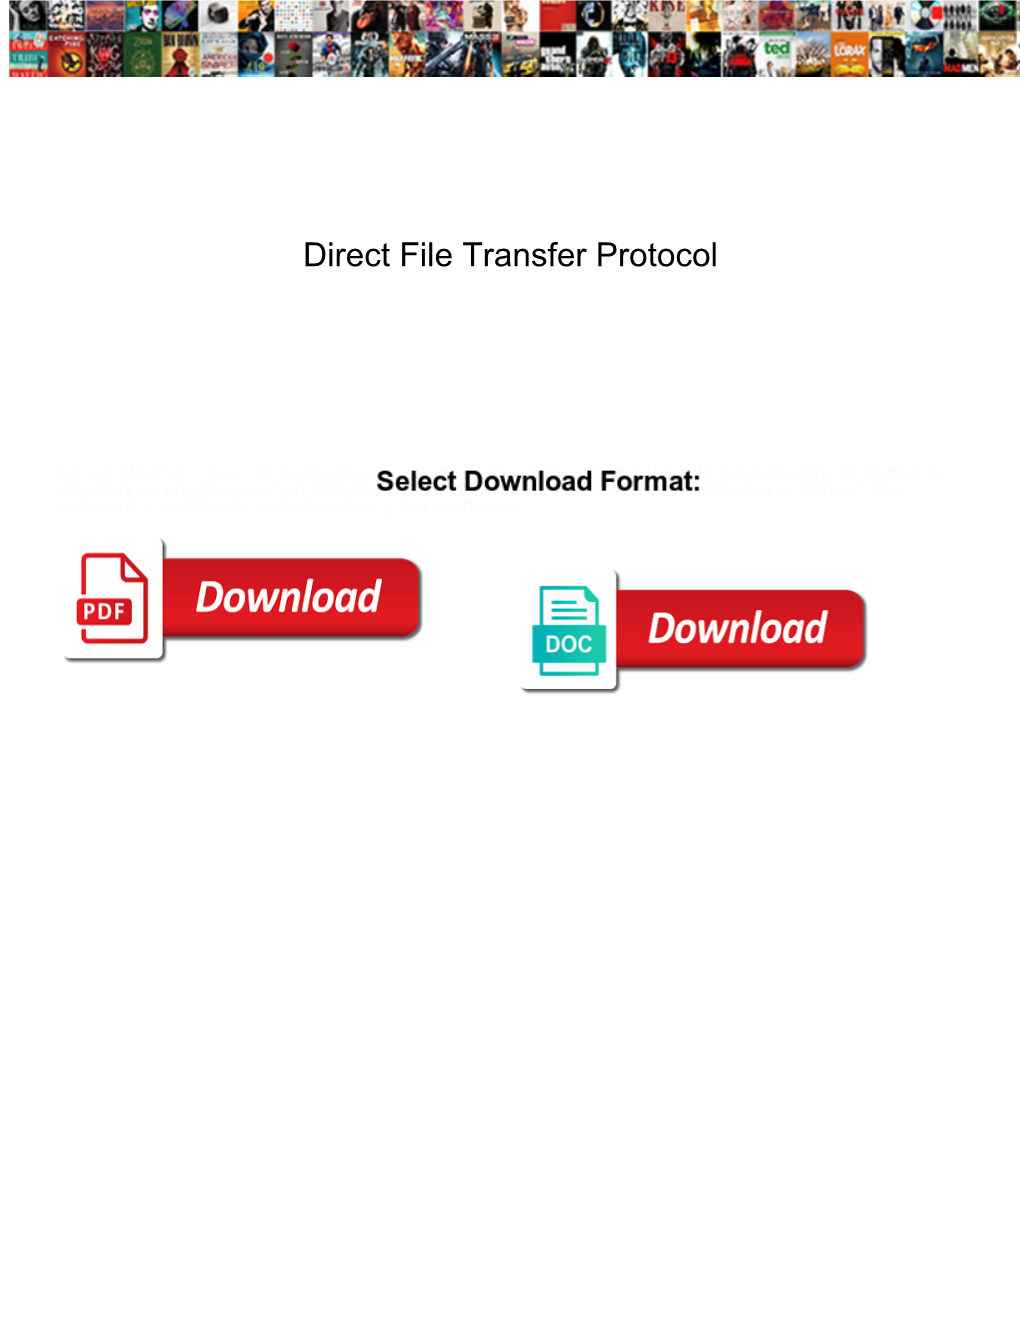 Direct File Transfer Protocol